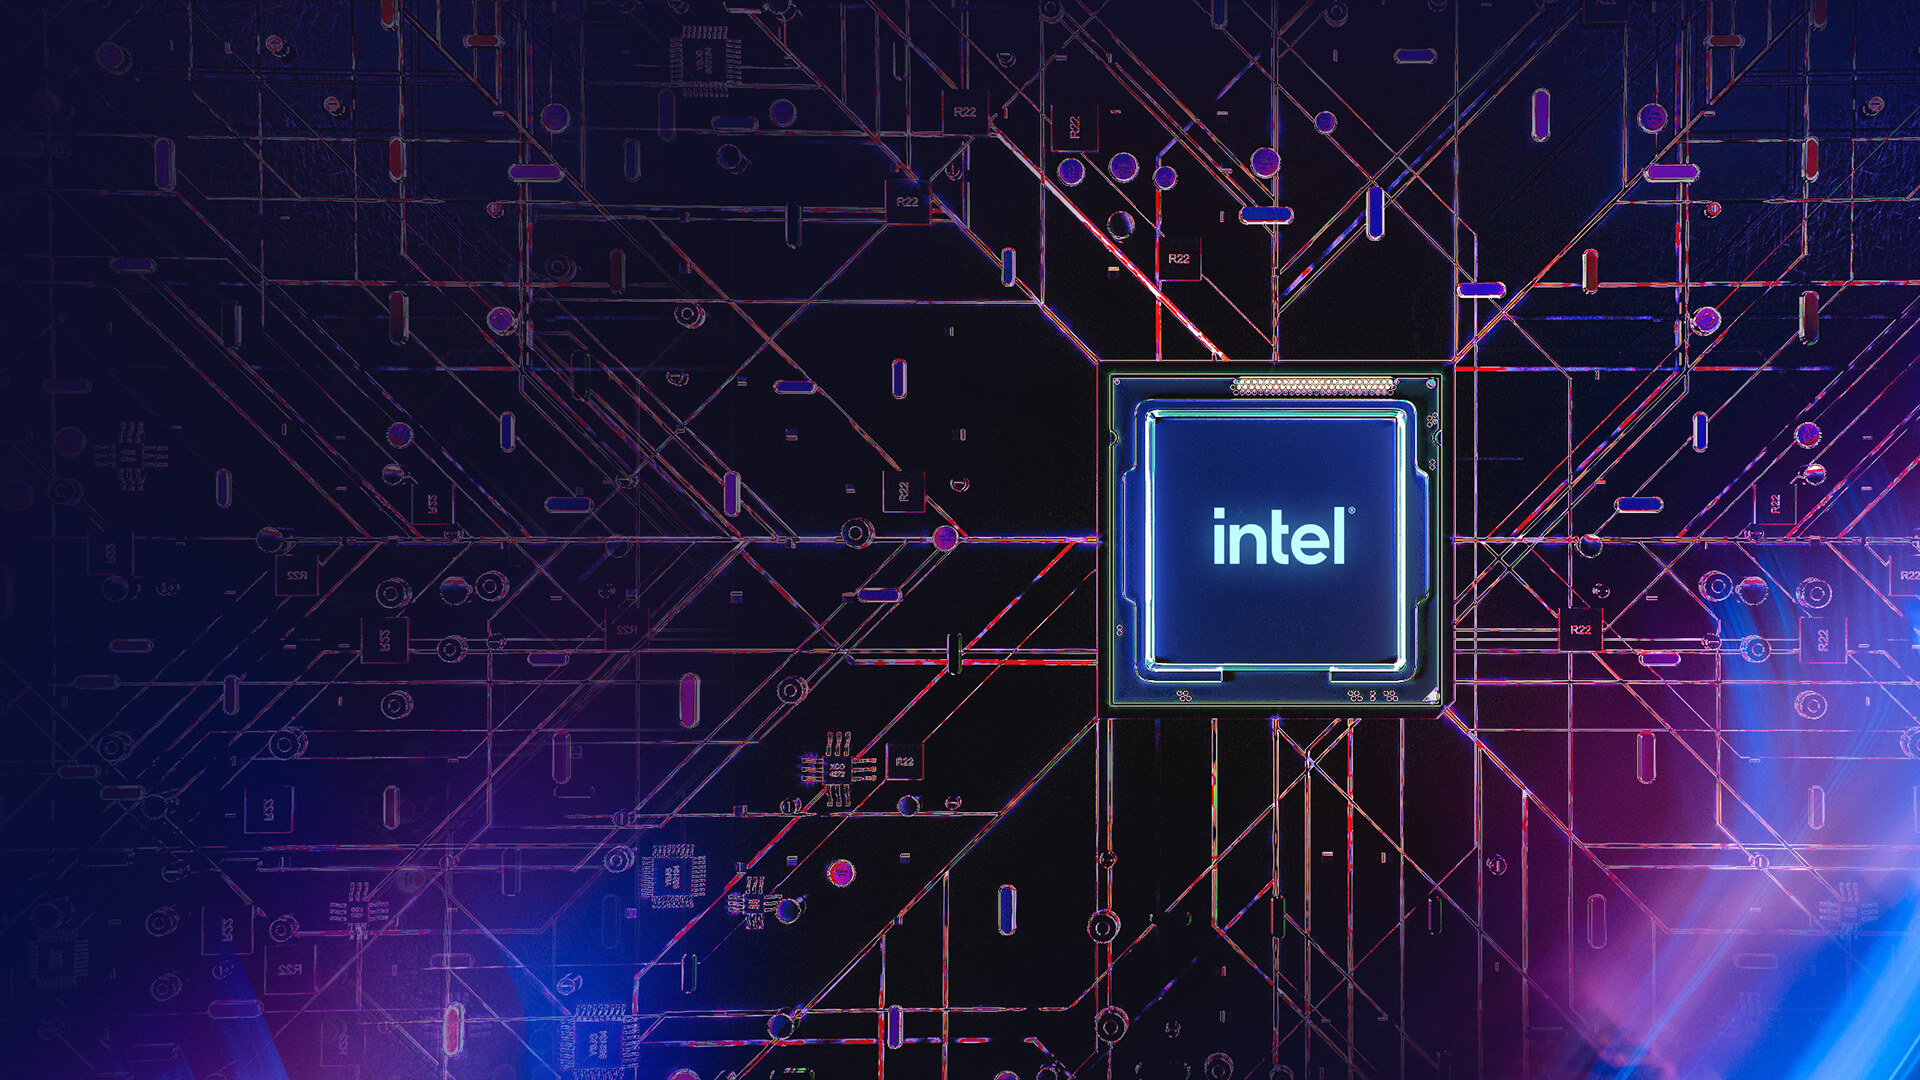 Le processeur Intel posé sur une carte mère violette stylisée, le courant électrique circulant vers le processeur.